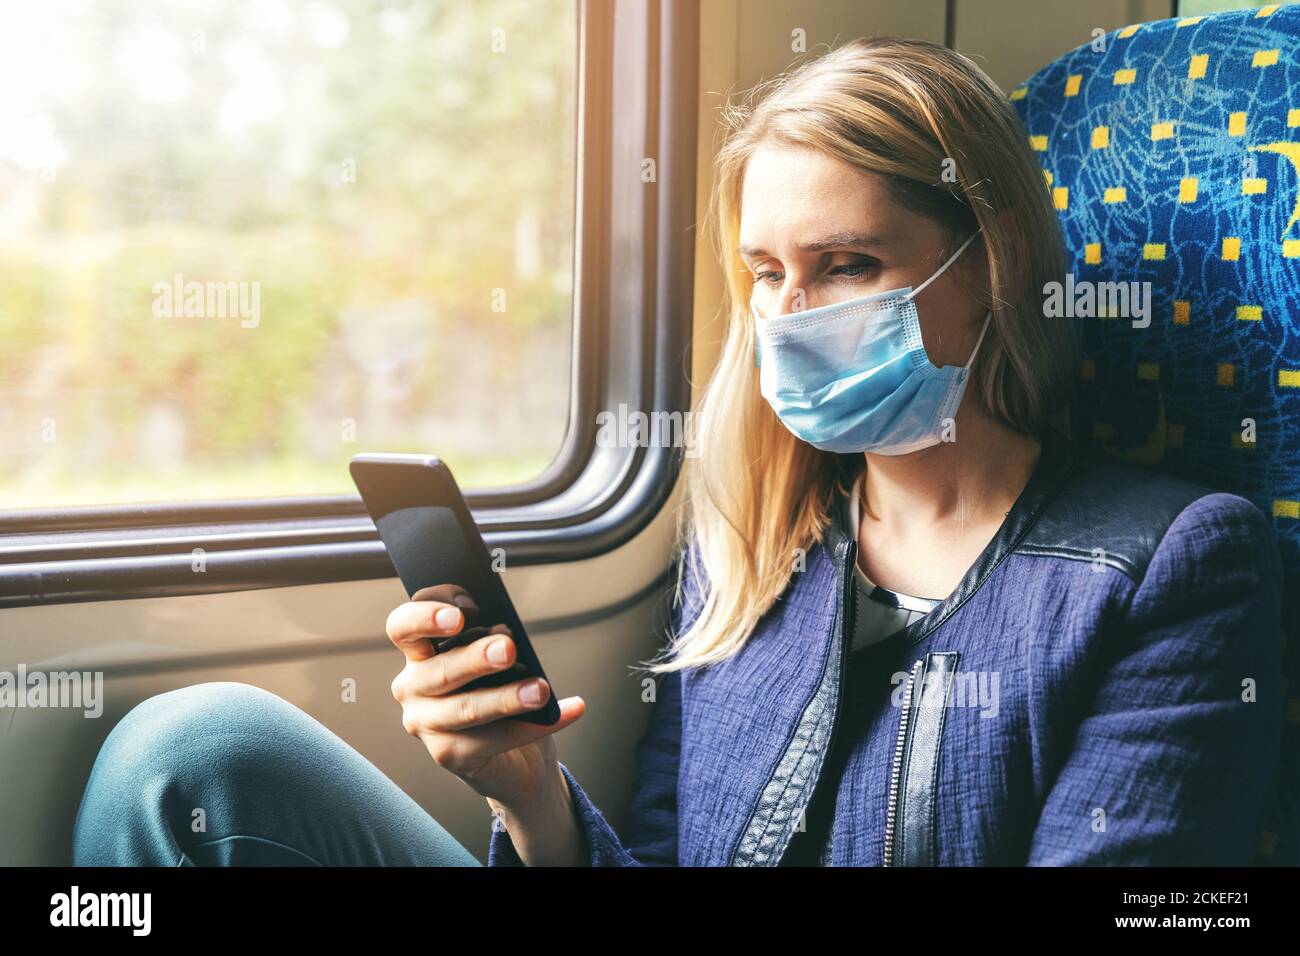 giovane donna con maschera facciale con telefono cellulare in treno. sicurezza nei trasporti pubblici Foto Stock